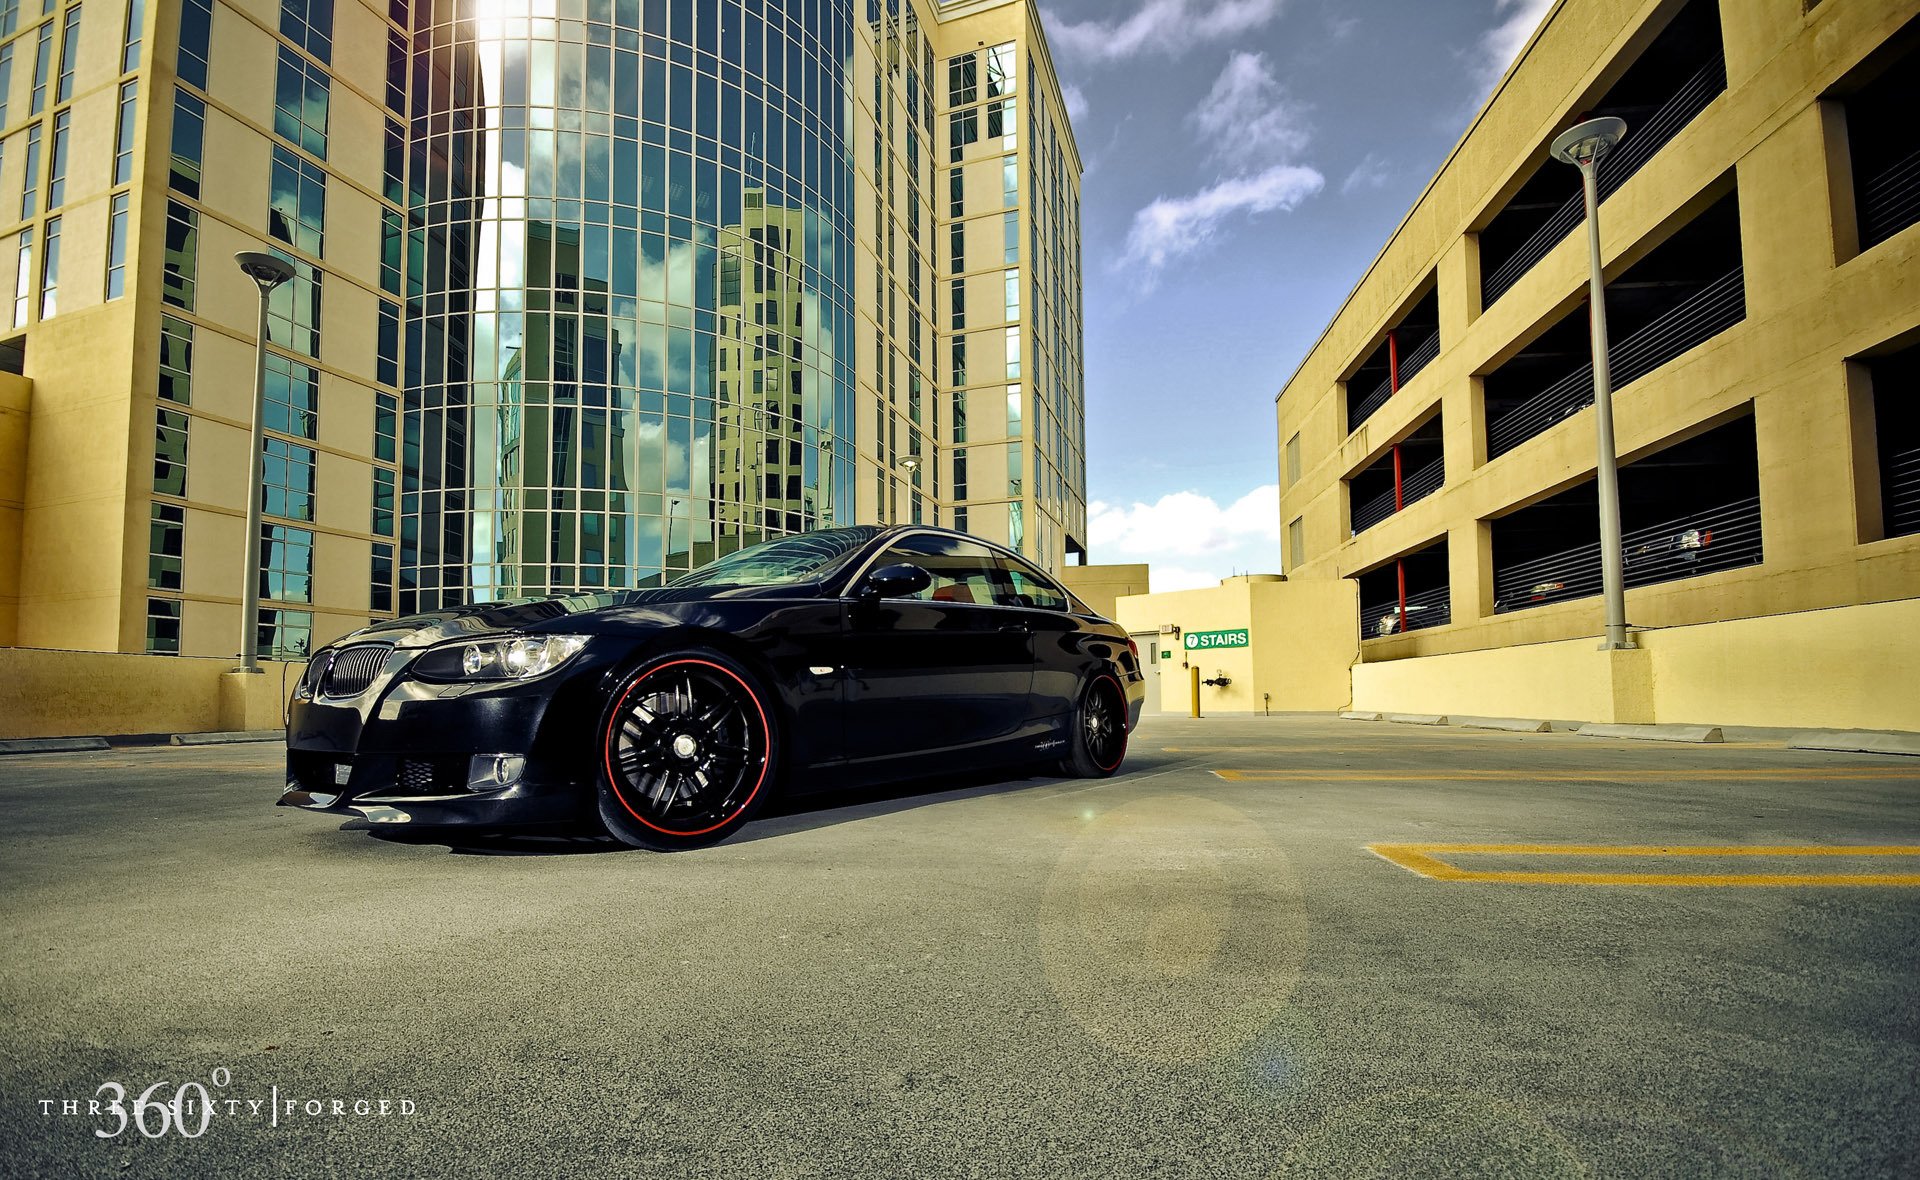 360 forged. Черное авто. Машина на фоне здания. Авто на красивом фоне. Машина на фоне города.